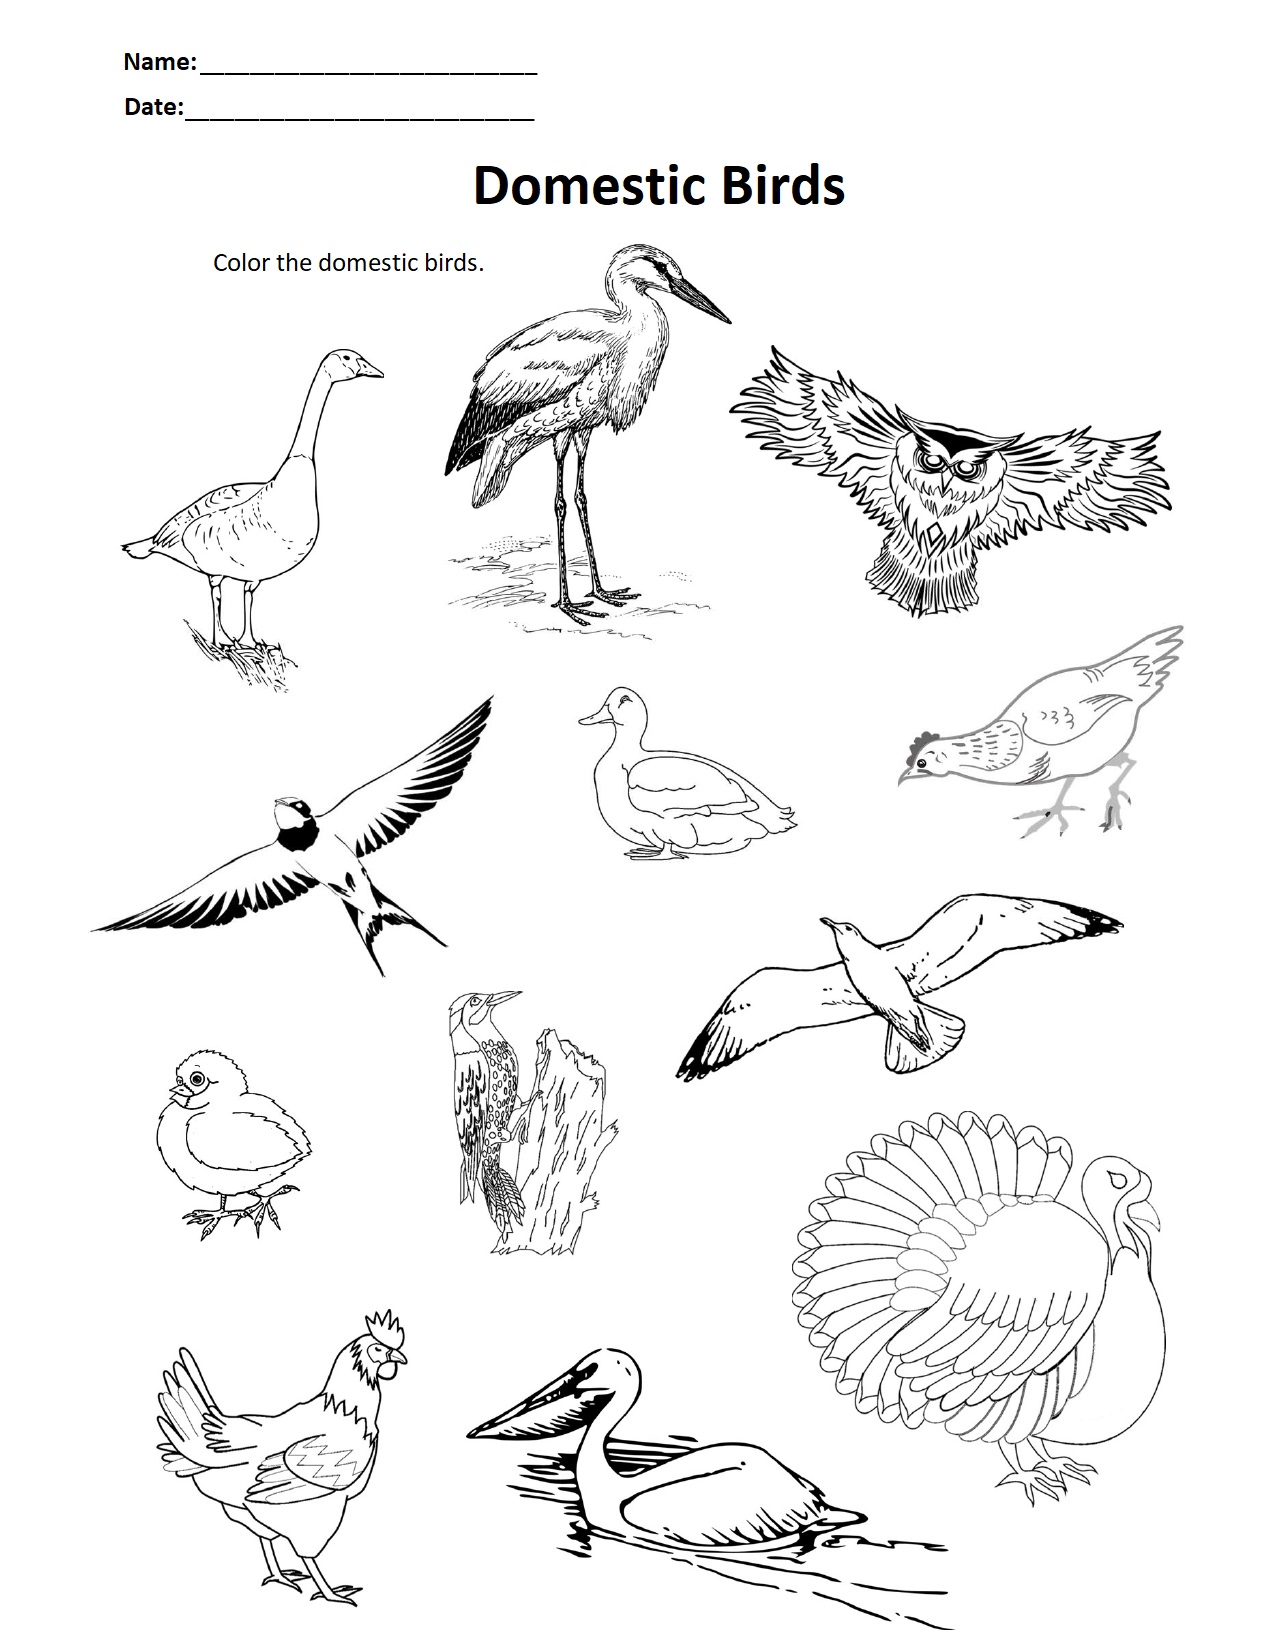 Domestic Birds.jpg